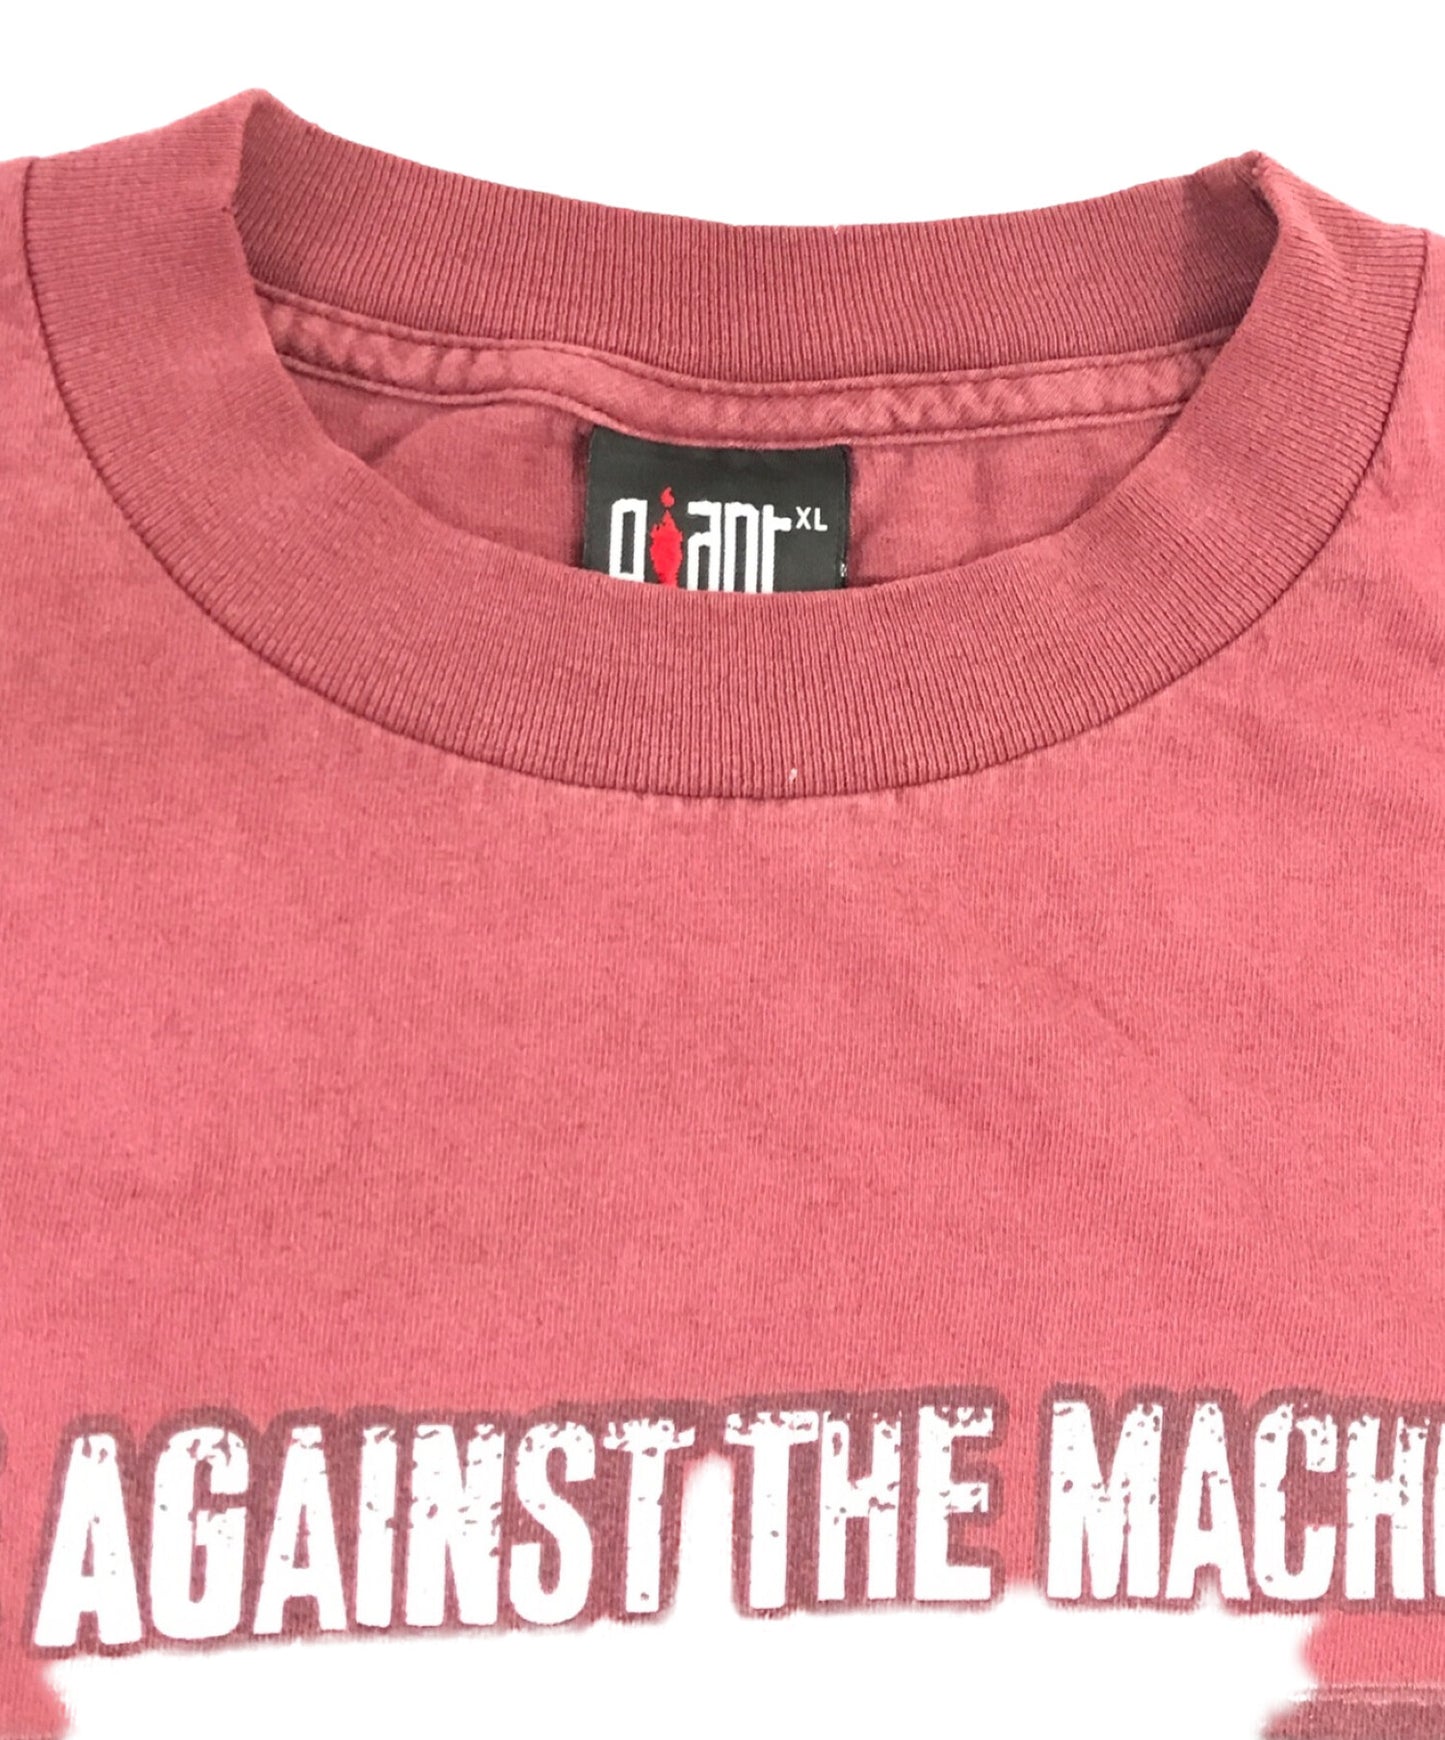 對機器90年代的複古樂隊Tour T恤的憤怒